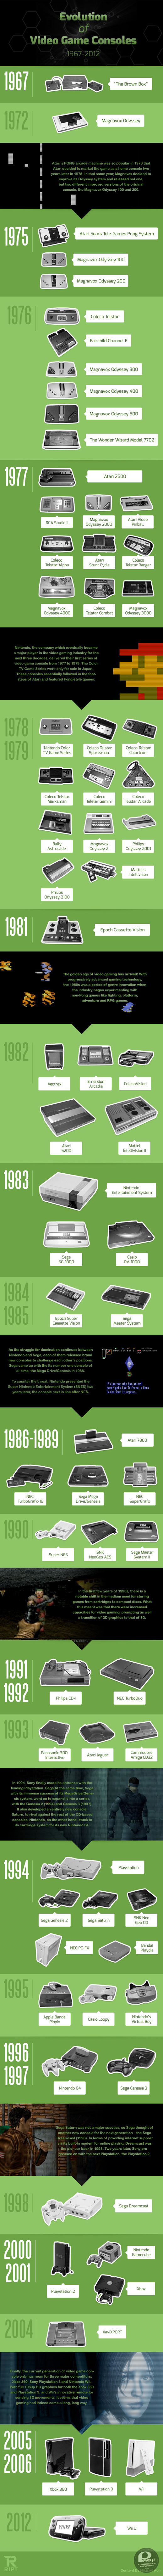 Coś dla prawdziwych graczy – Ewolucja konsol do gier w latach 1967-2012
Od Brown Box do Nintendo WiiU 